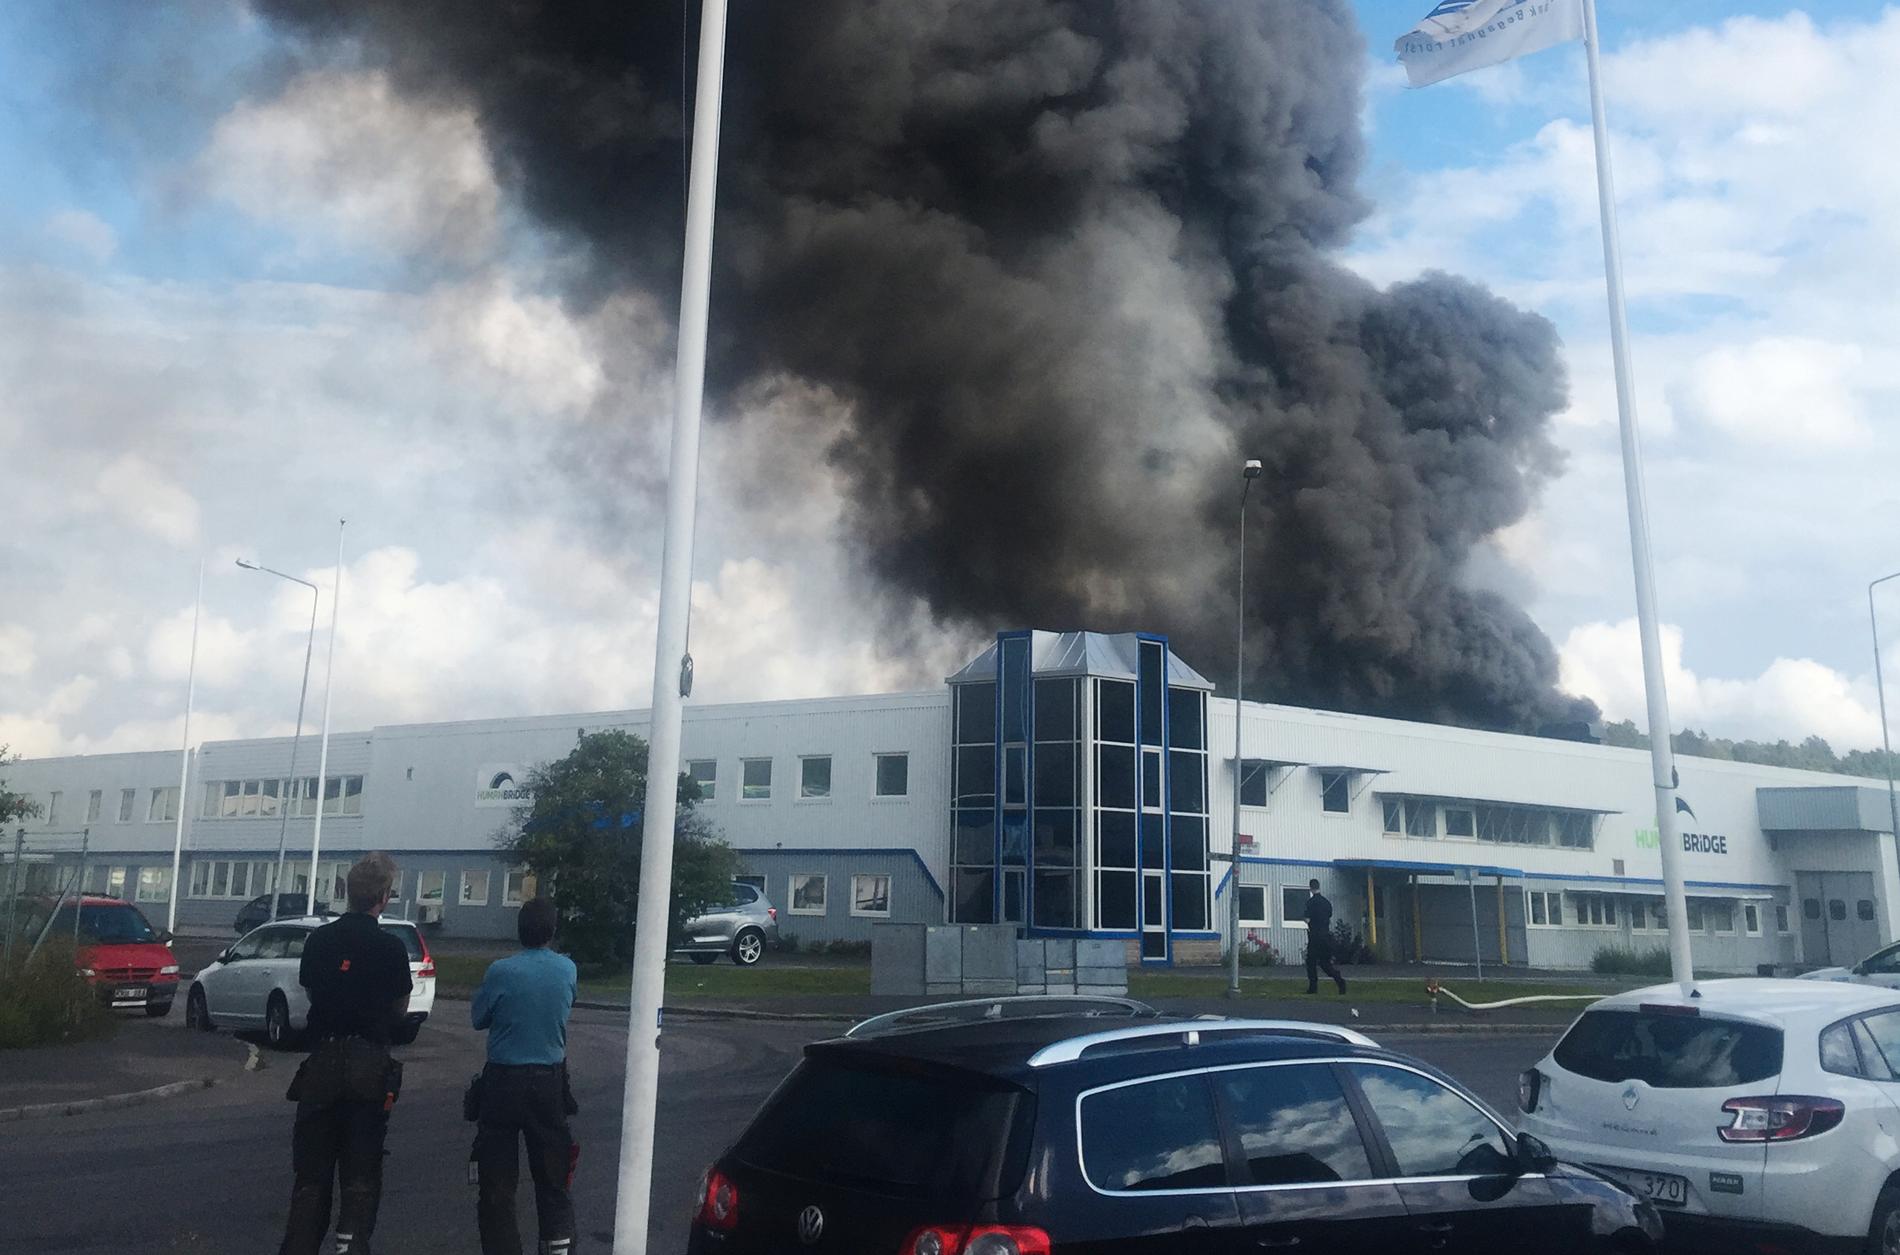 Det brinner i en industrilokal i Mölndal utanför Göteborg.